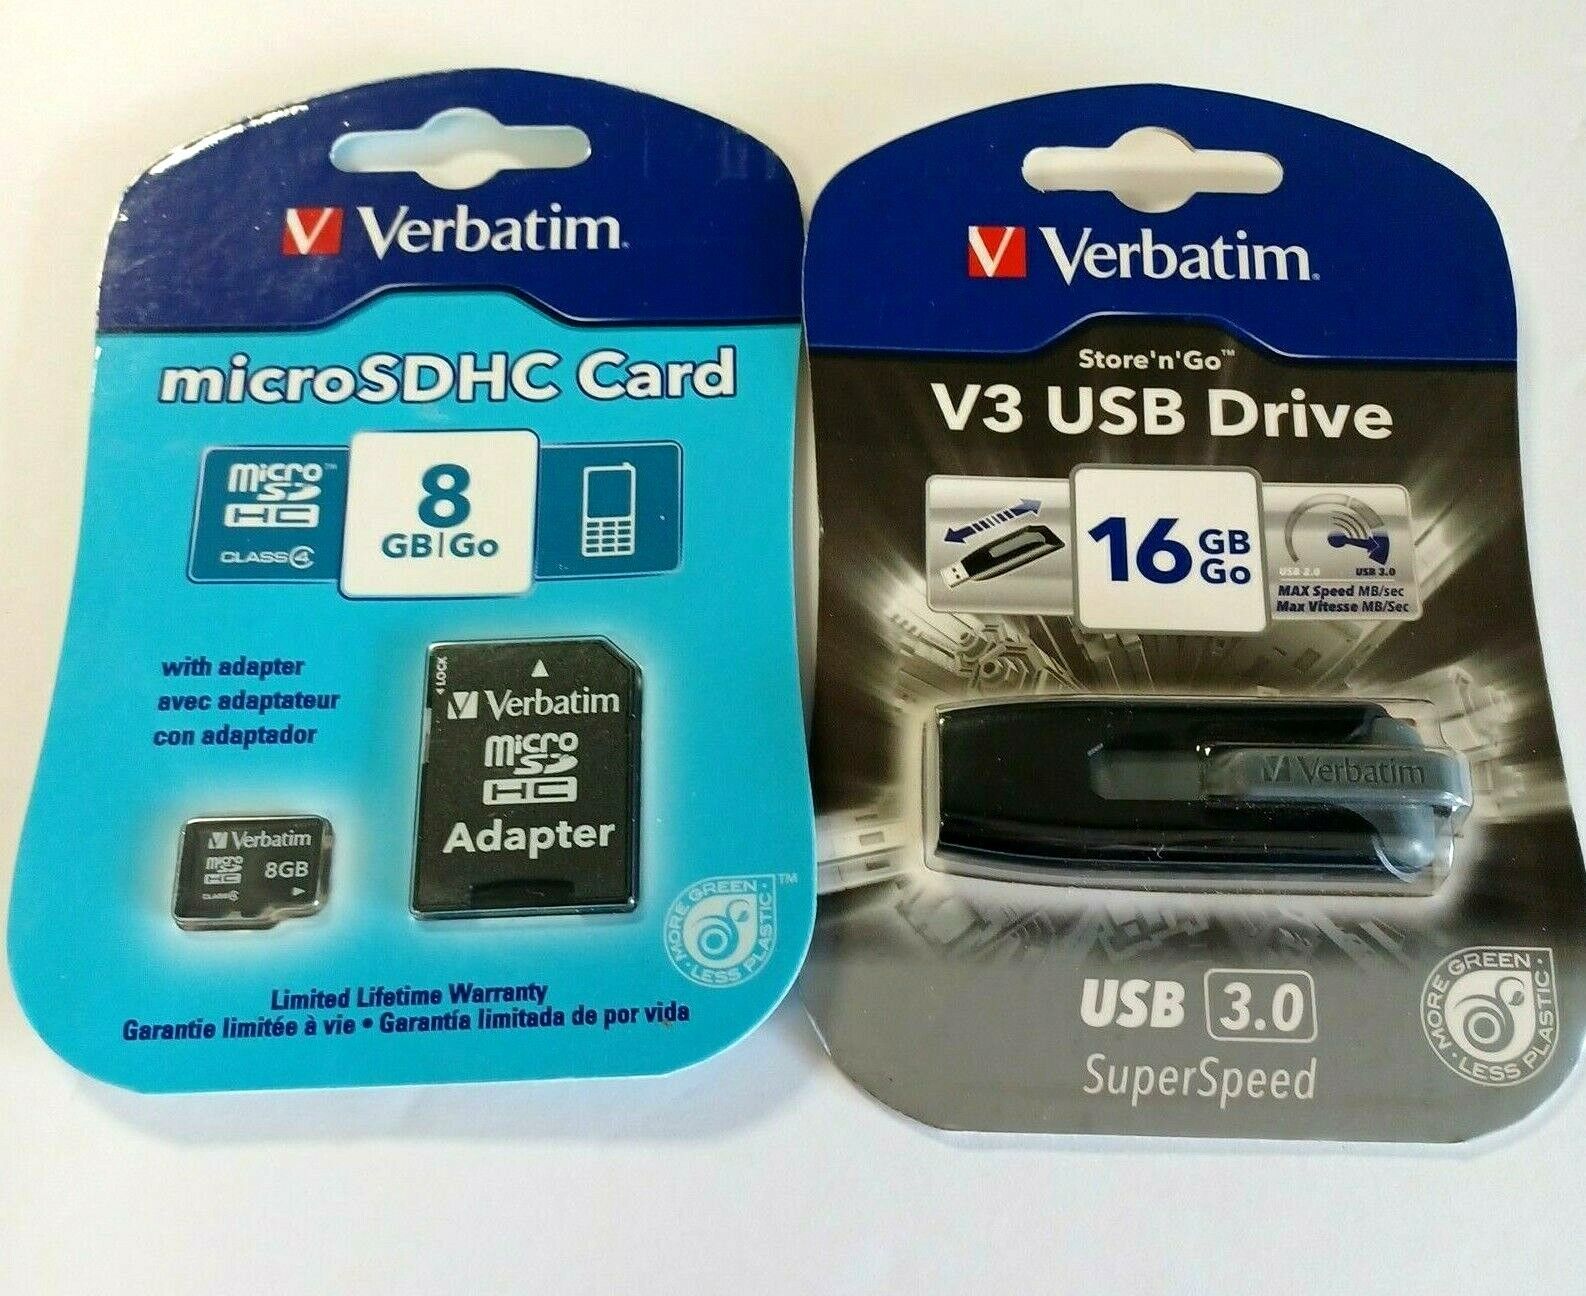 Verbatim 16Gb Flash Drive Usb 3.0 Store N Go V3 Retractable + 8Gb MicroSDHC Card